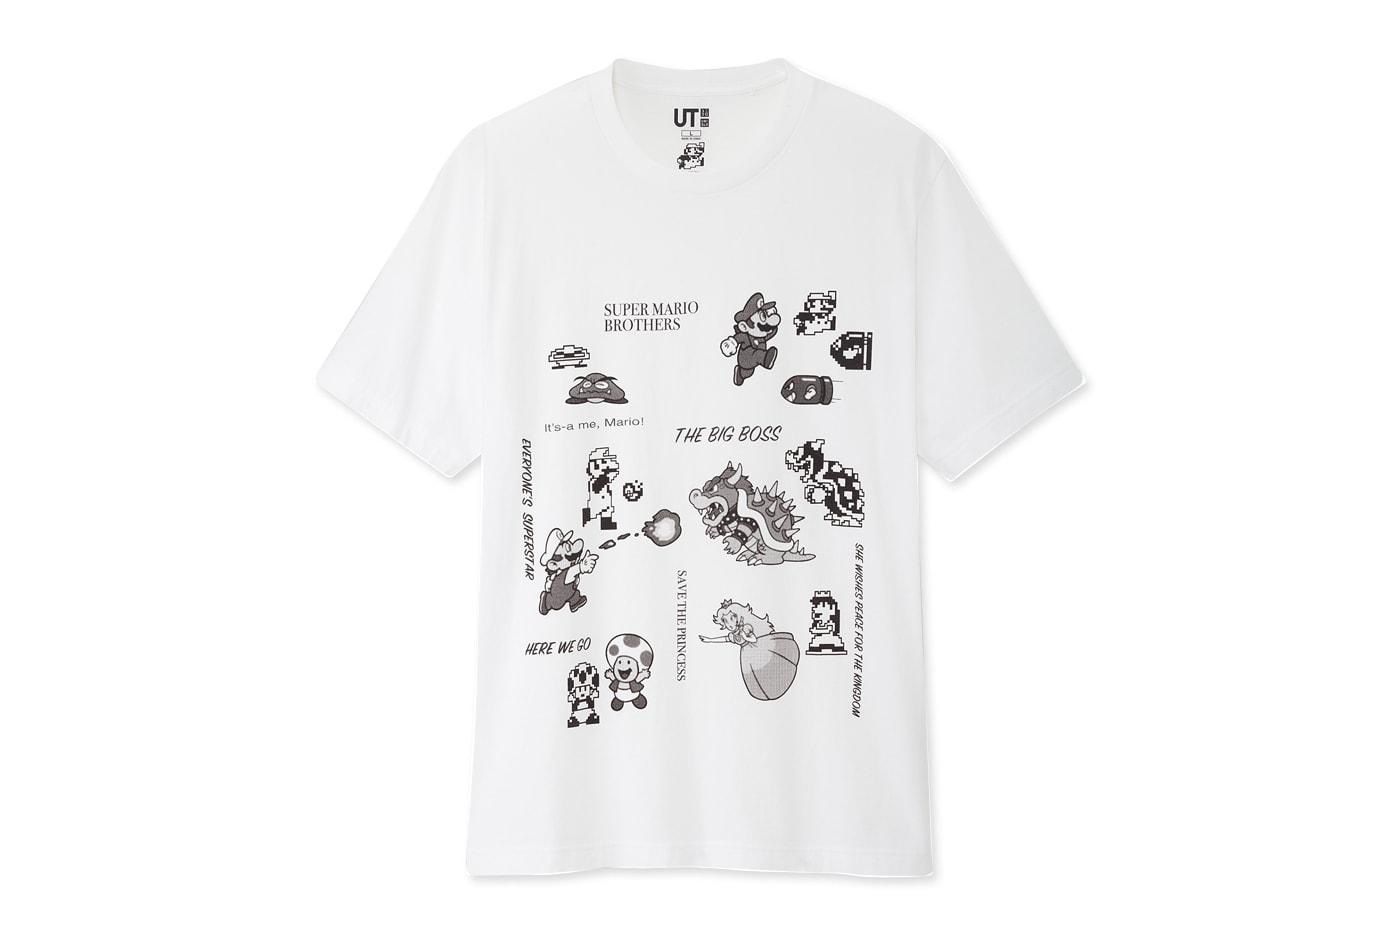 UNIQLO UT 'Super Mario' T-Shirt Collection Japanese Japan UT Uniqlo Graphic tees T-Shirts Graphic tee Luigi Mario 64 